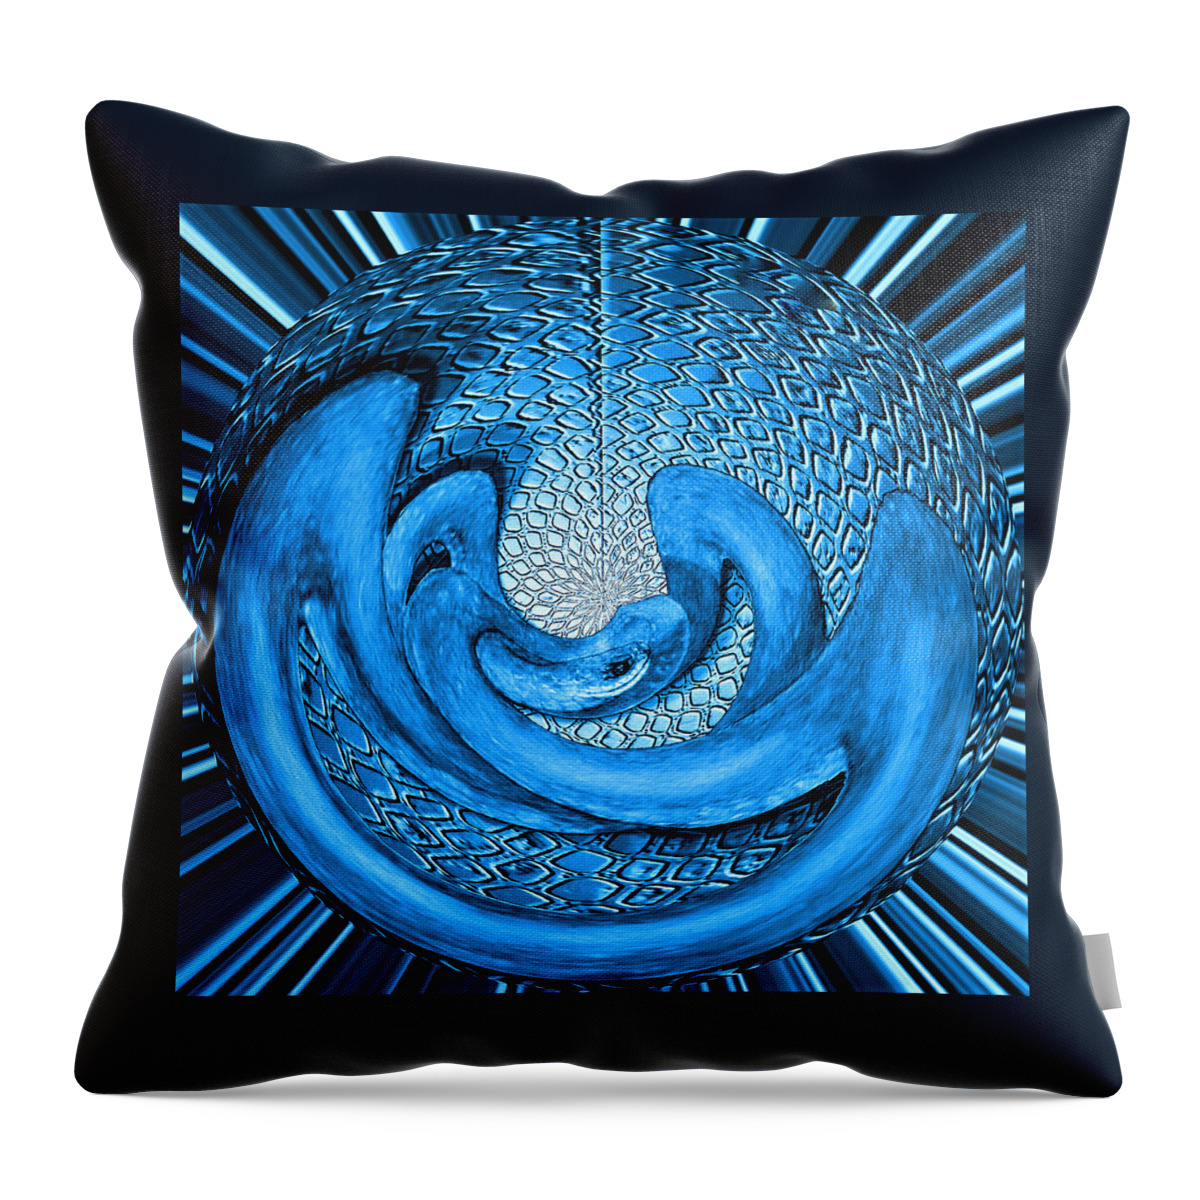 Digital Wallart Throw Pillow featuring the digital art Snake in an Egg by Ronald Mills